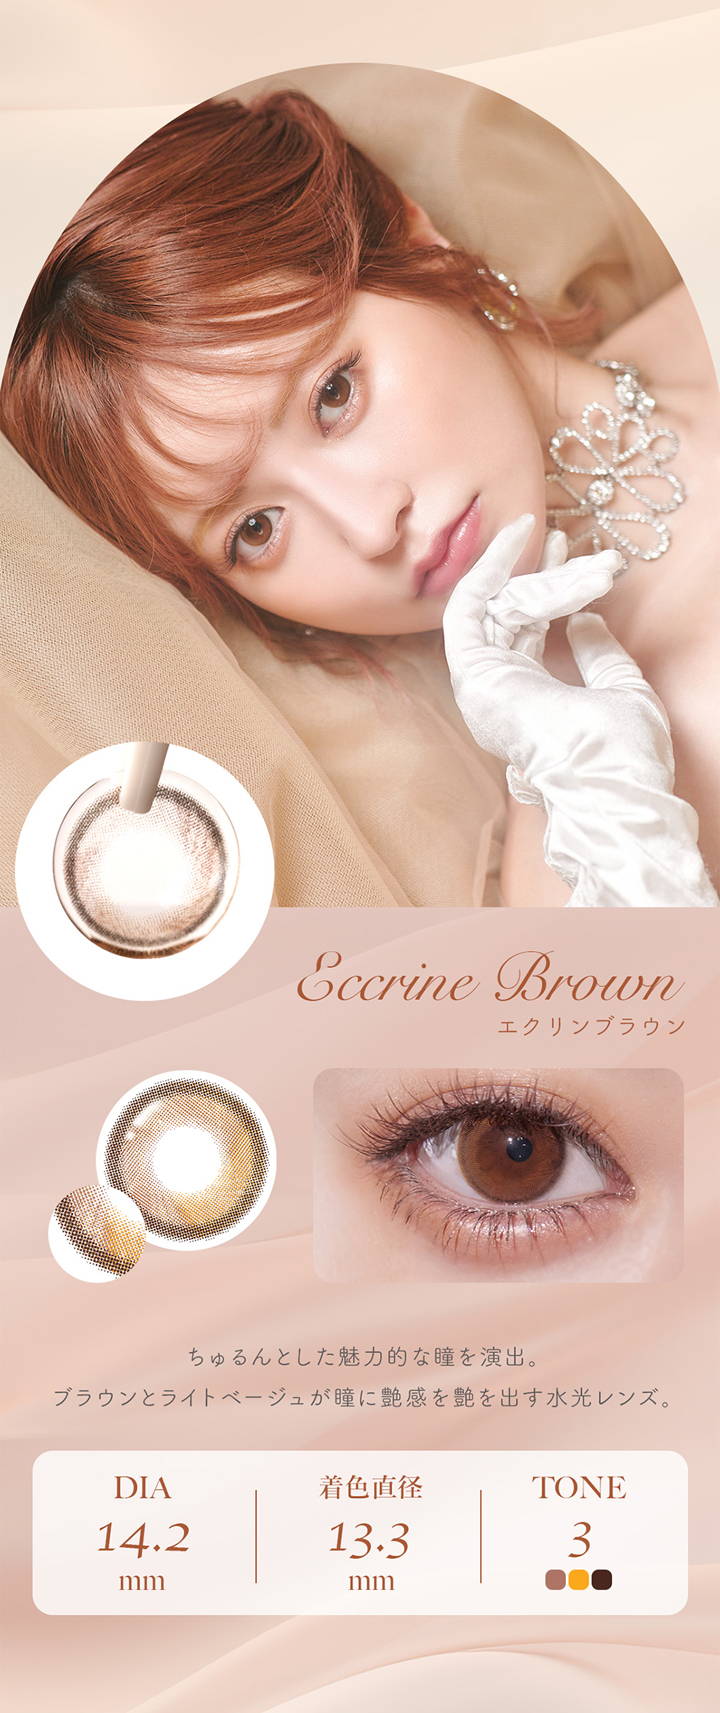 フェレーヌ(ferenne),Eccrine Brown,エクリンブラウン,ちゅるんとした魅力的な瞳を演出。,ブラウンとライトベージュが瞳に艶感を艶を出す水光レンズ。DIA 14.2mm,着色直径 13.3mm,TONE 3,カラコン,カラーコンタクト